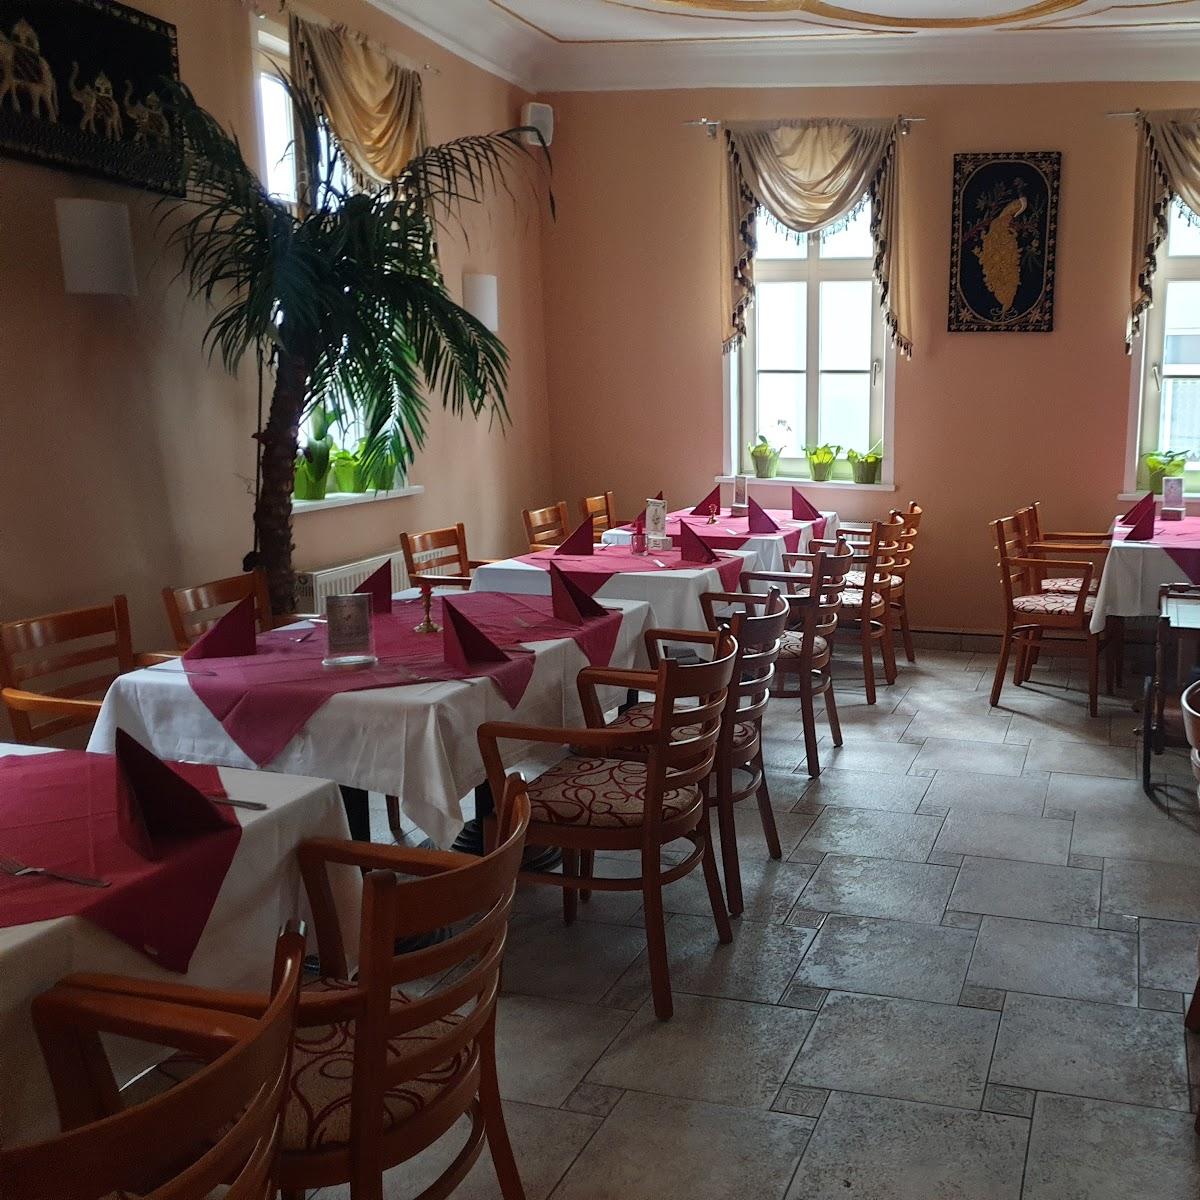 Restaurant "Restaurant Taj of India" in Jena